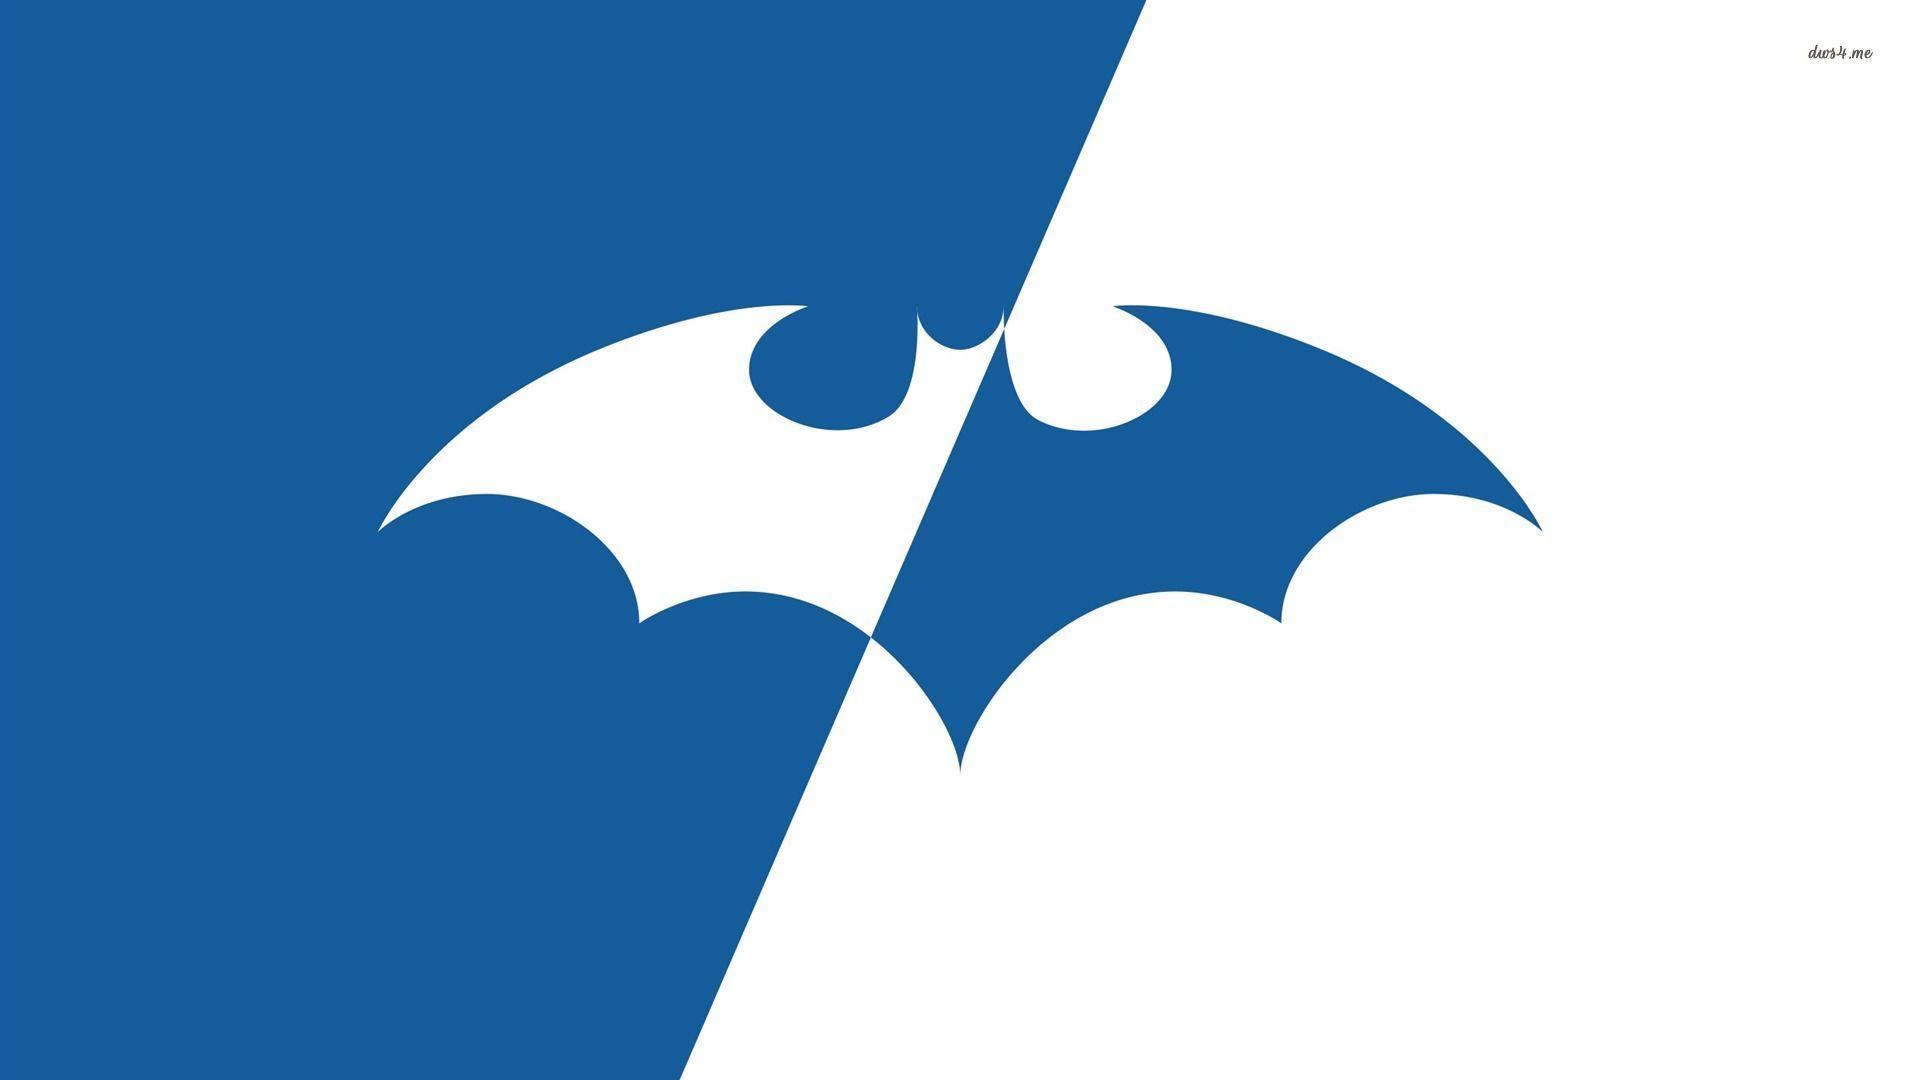 Blue Batman Wallpapers - Top Free Blue Batman Backgrounds - WallpaperAccess